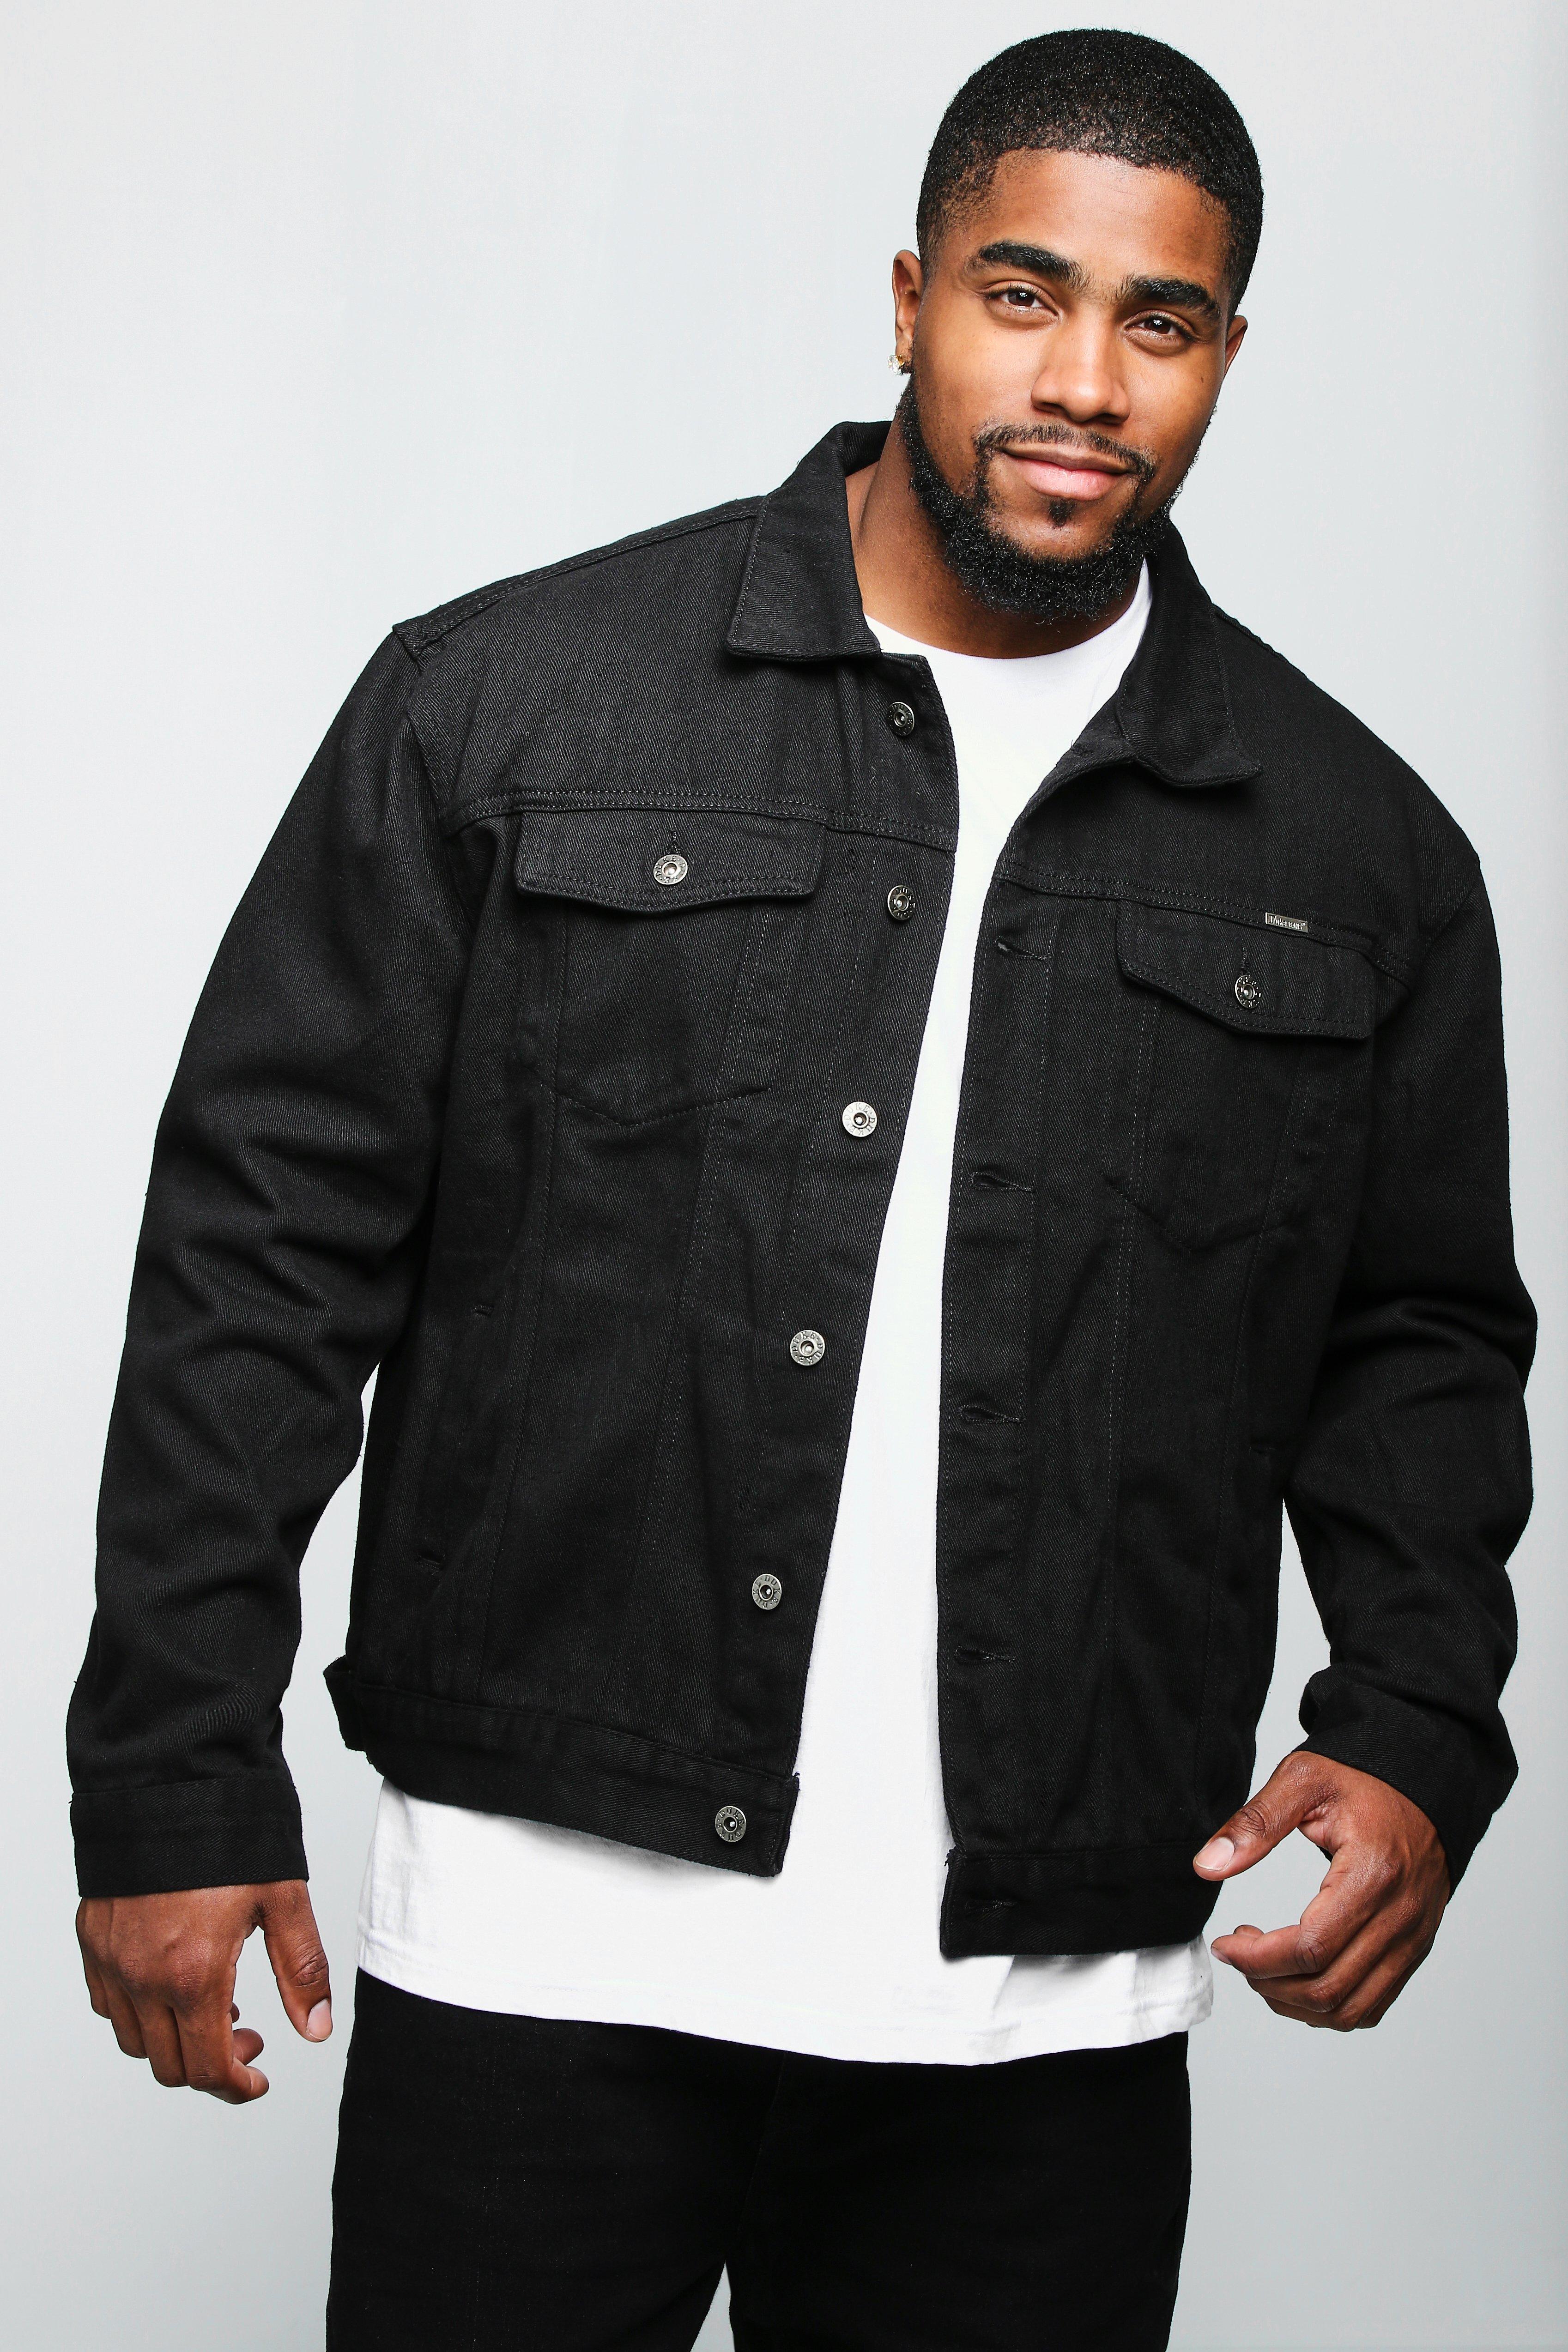 black jean jacket cheap